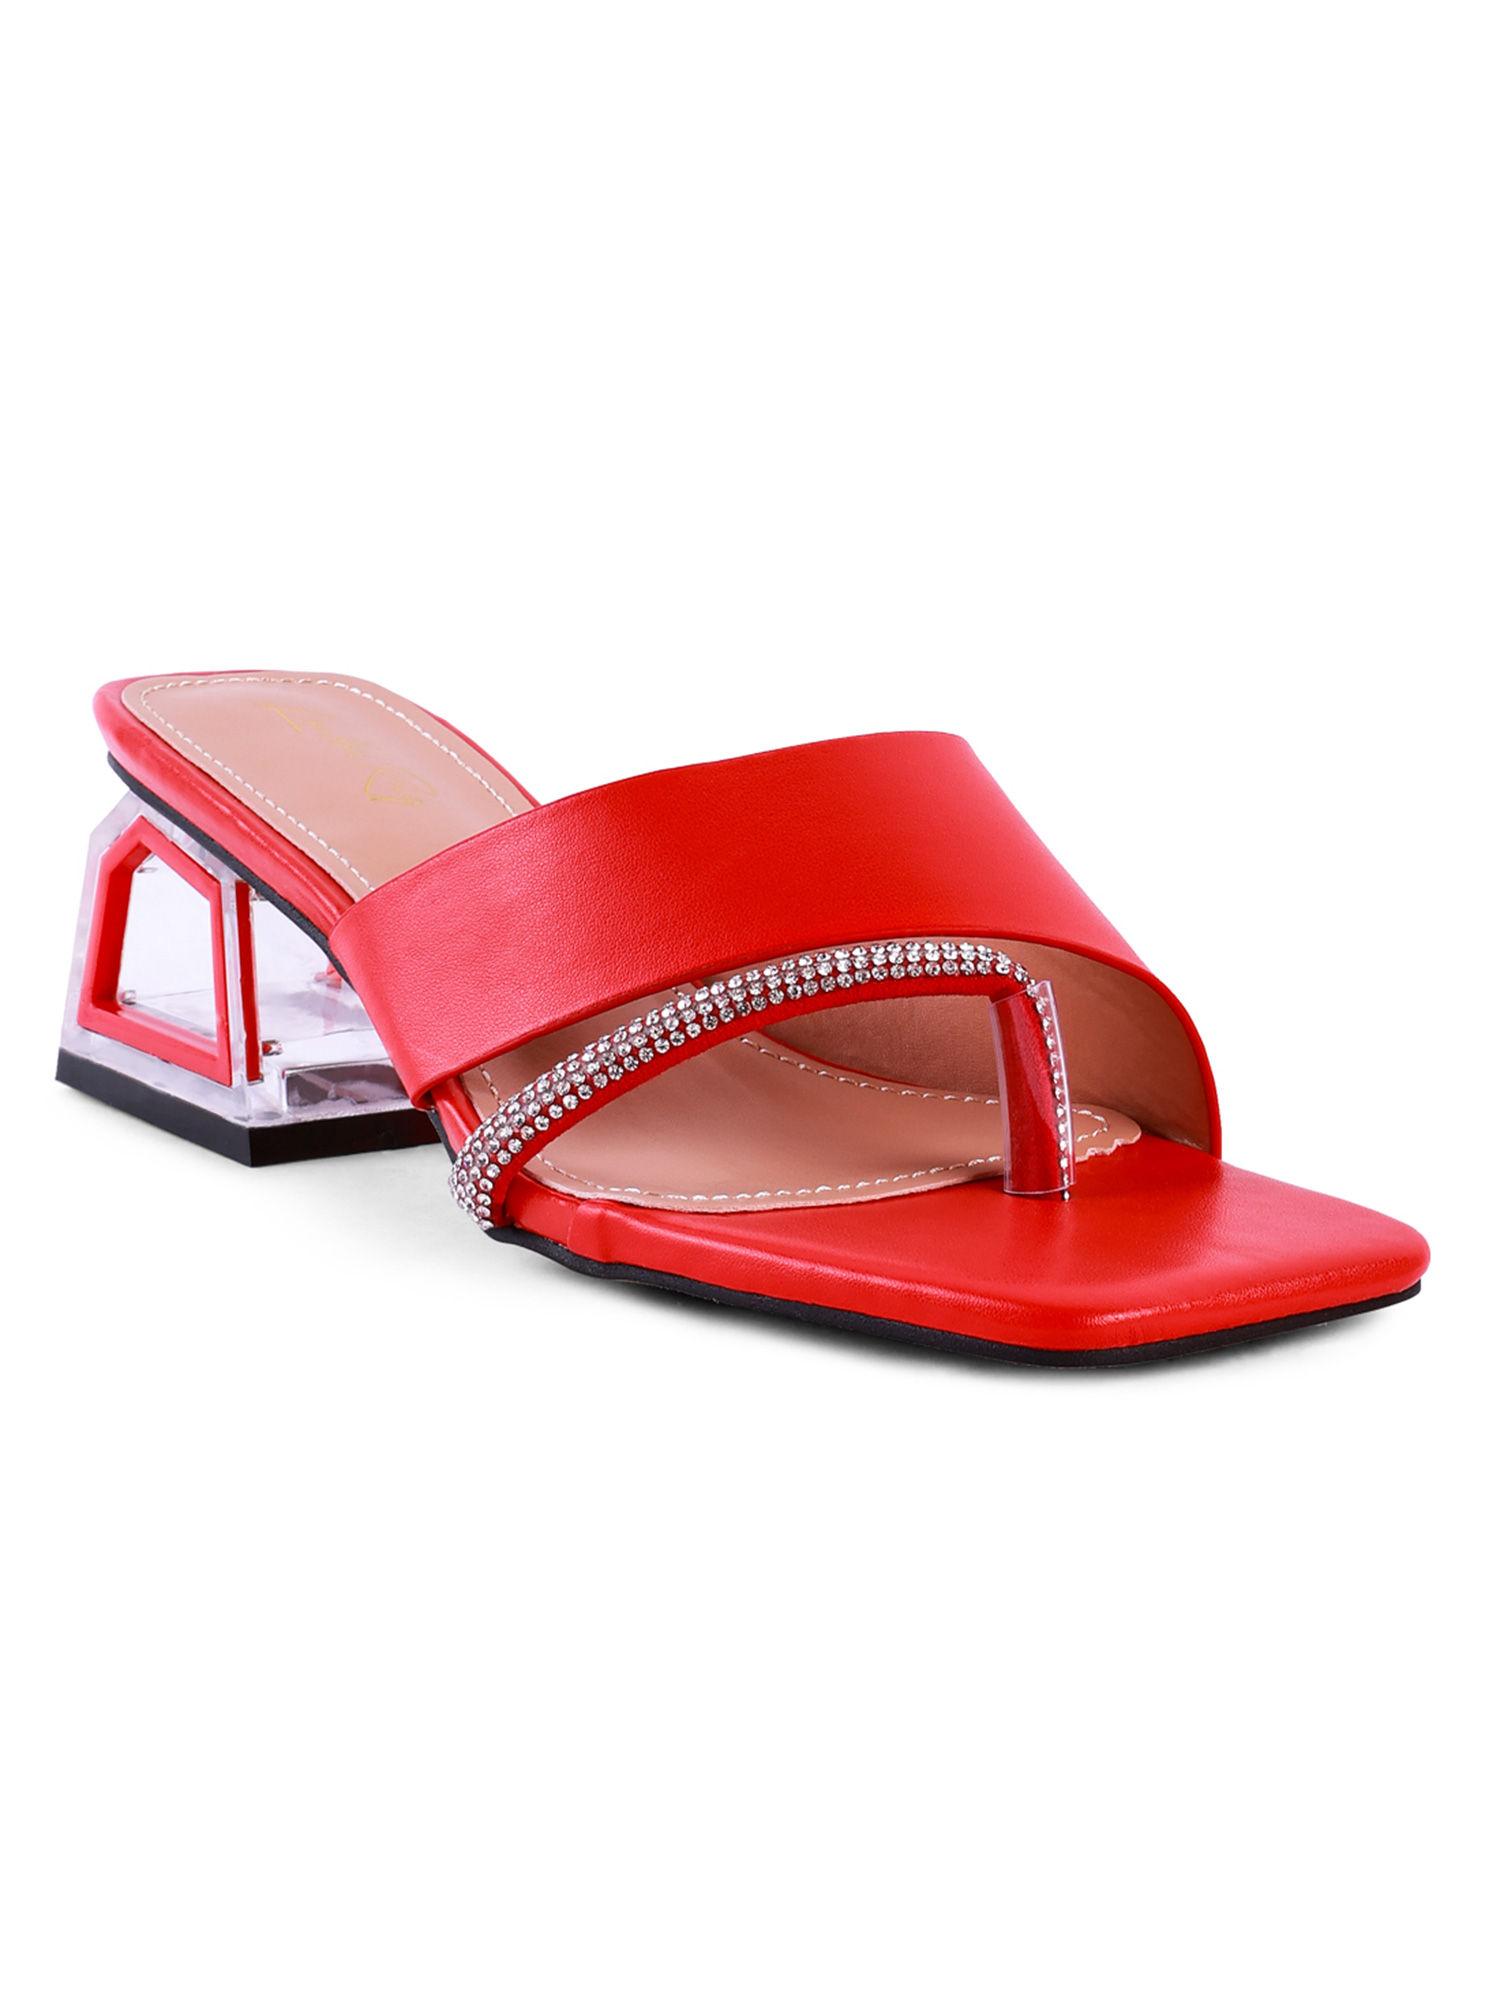 embellished-red-heels